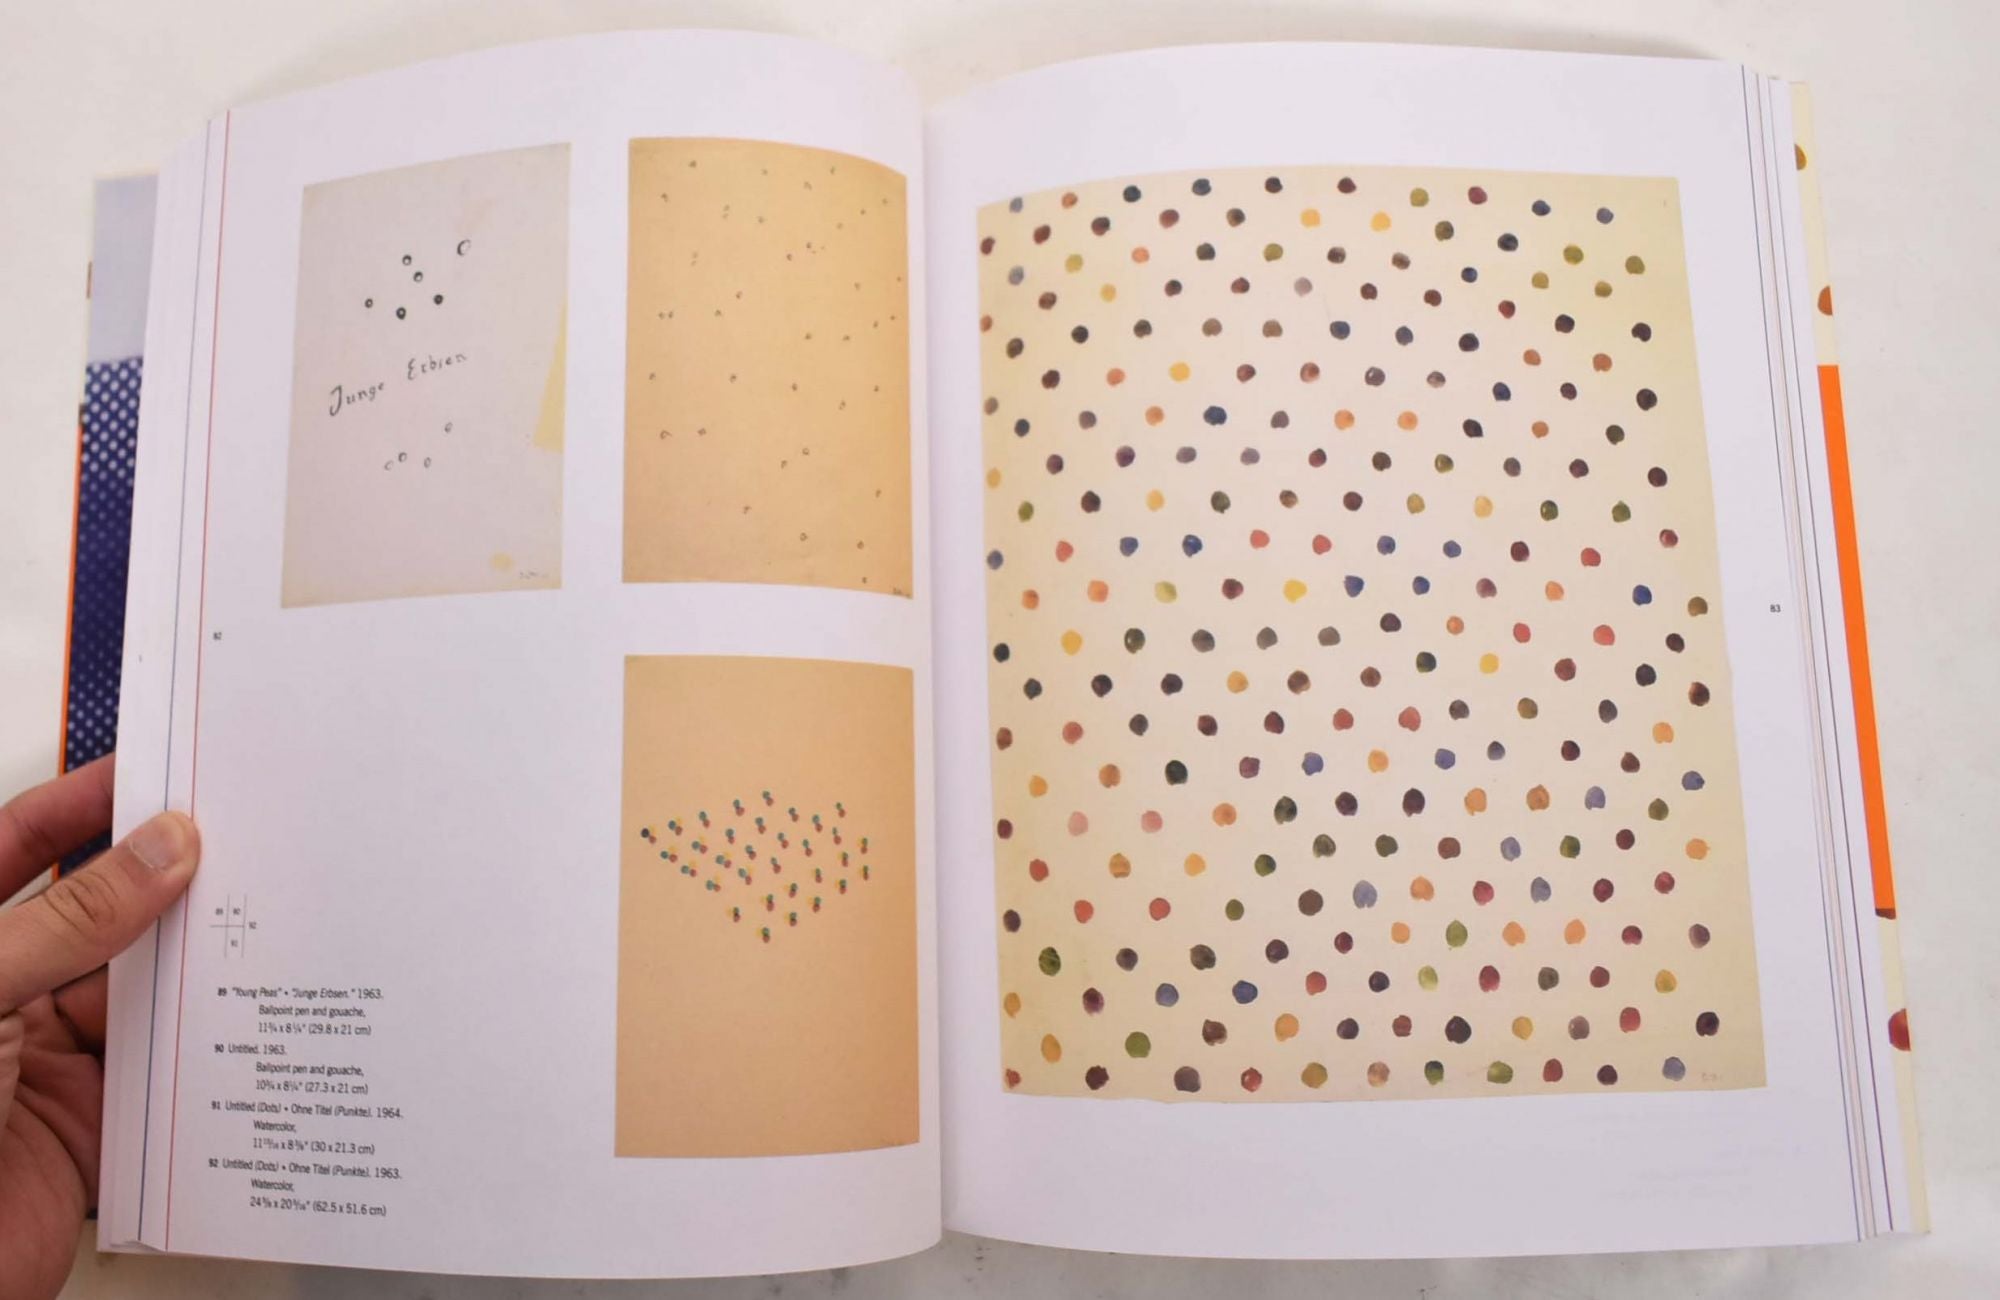 Sigmar Polke: Works on Paper, 1963-1974 | Margit Rowell, Michael